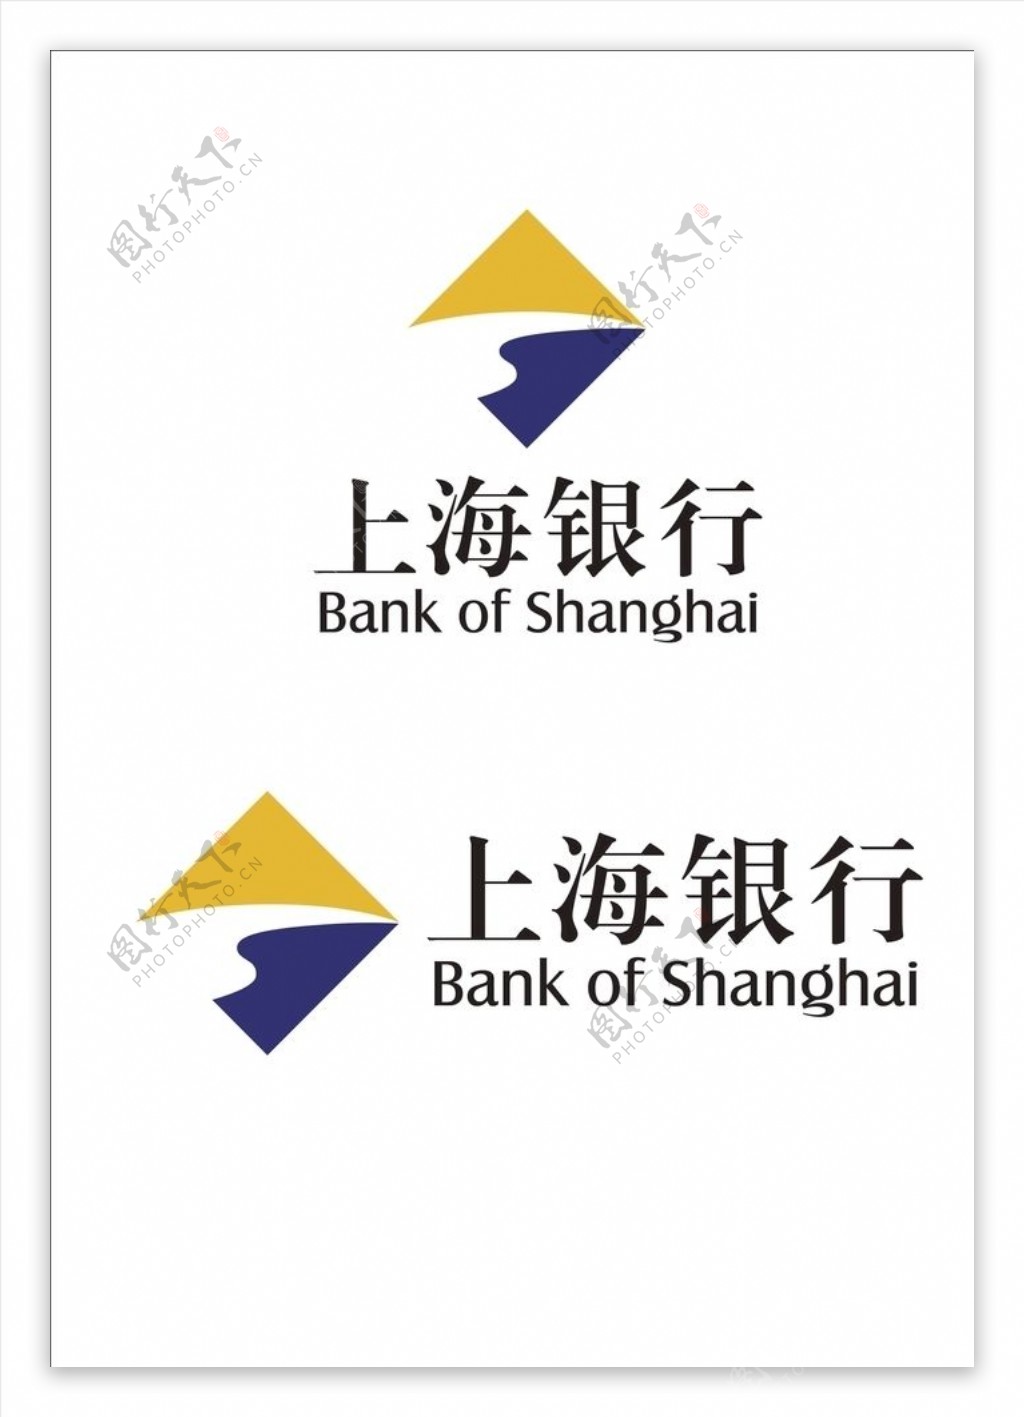 上海银行logo